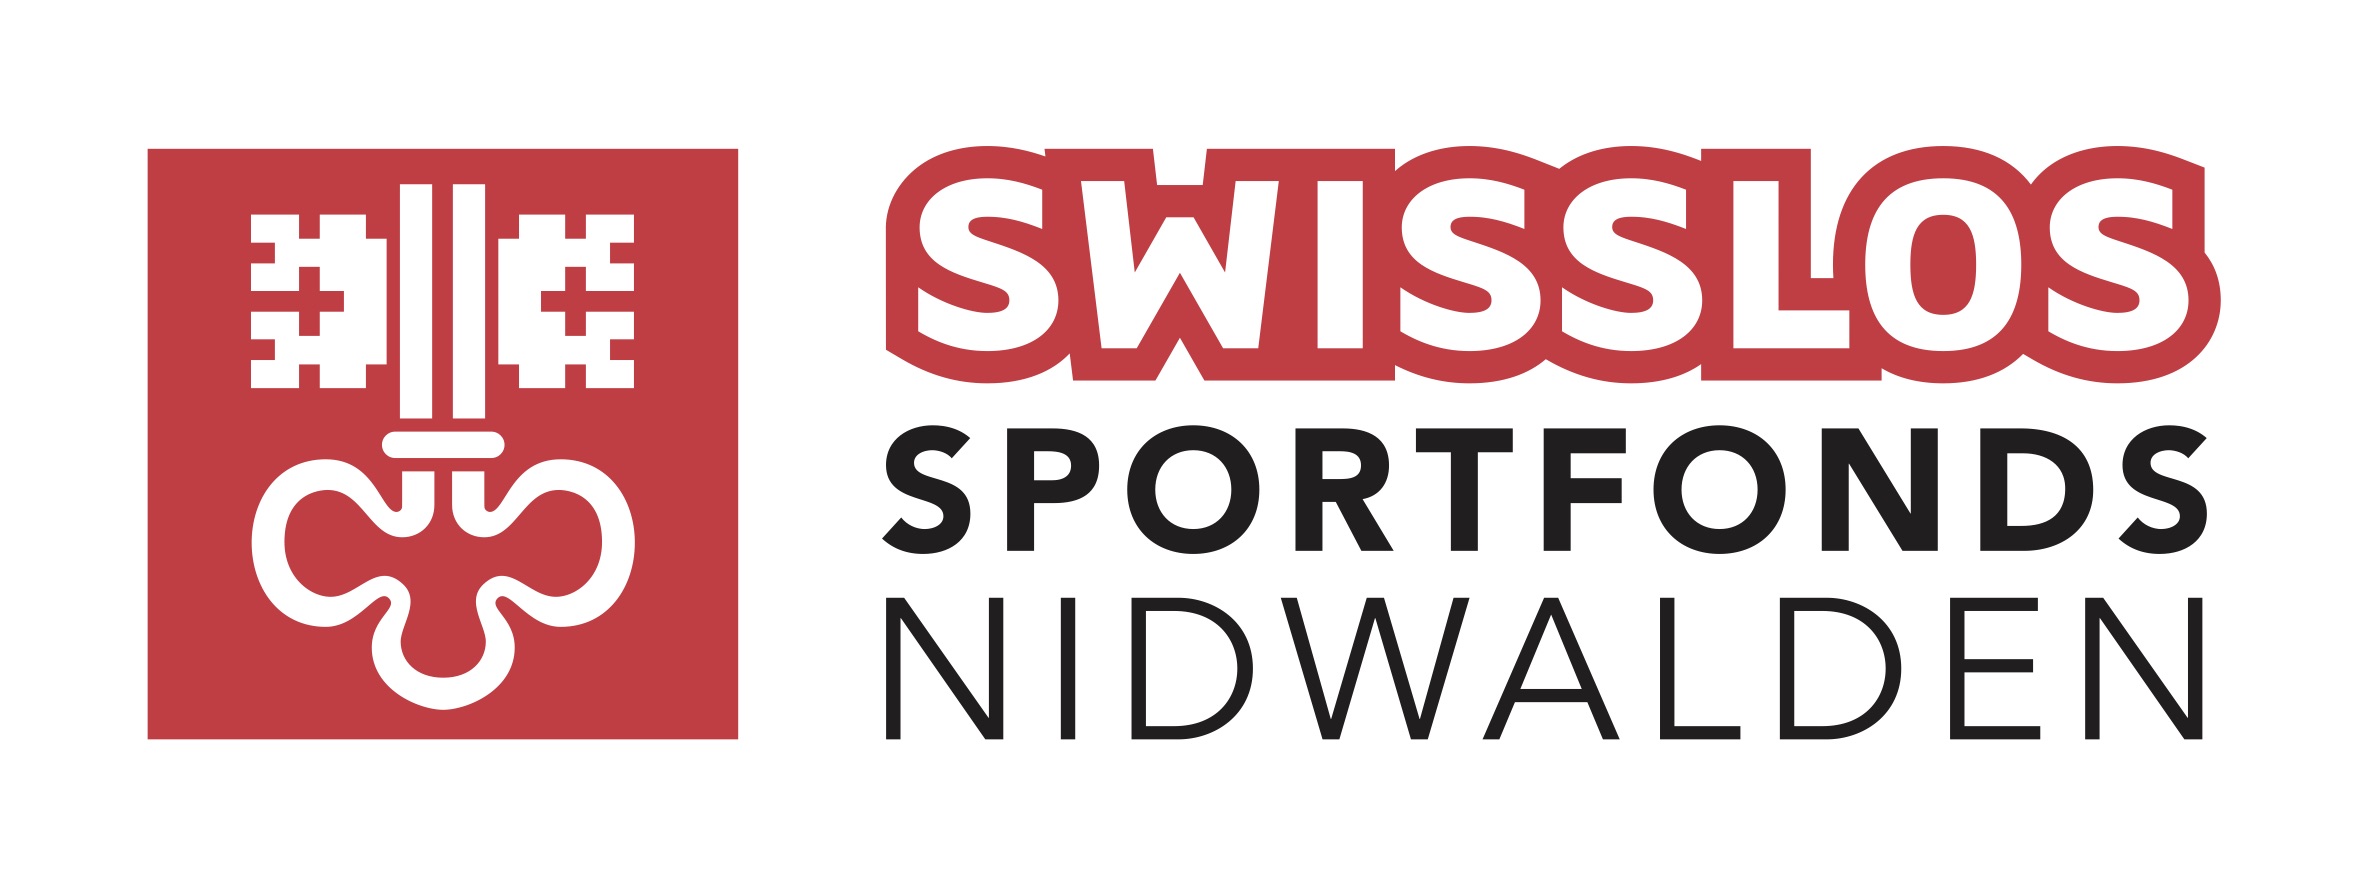 NW_Logo_Swisslos-Sportfonds_NW_cmyk_eps.jpg